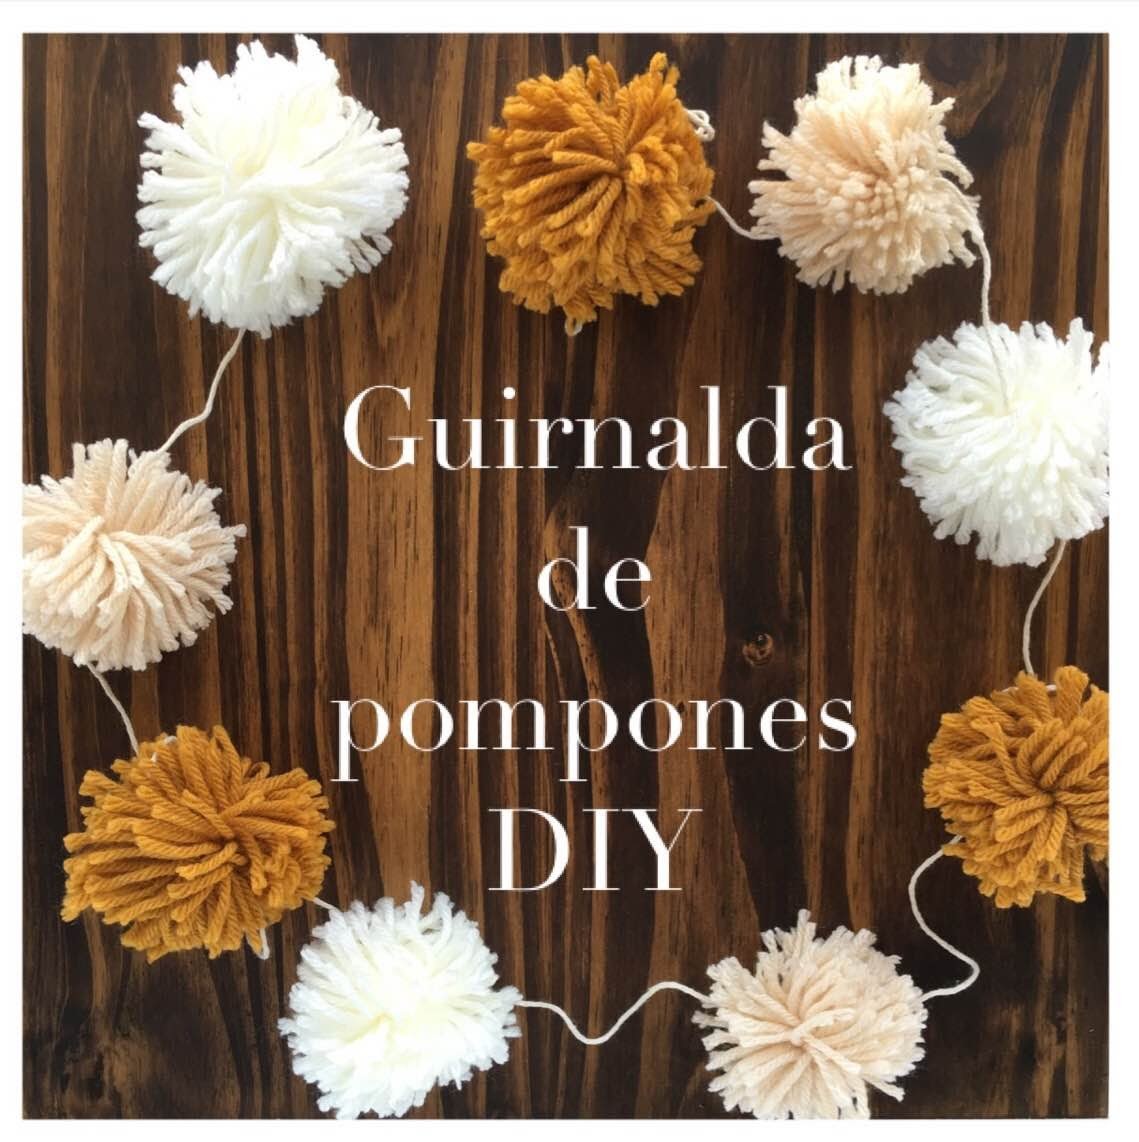 POM POM GARLAND DIY. GUIRNALDA DE POMPONES DIY